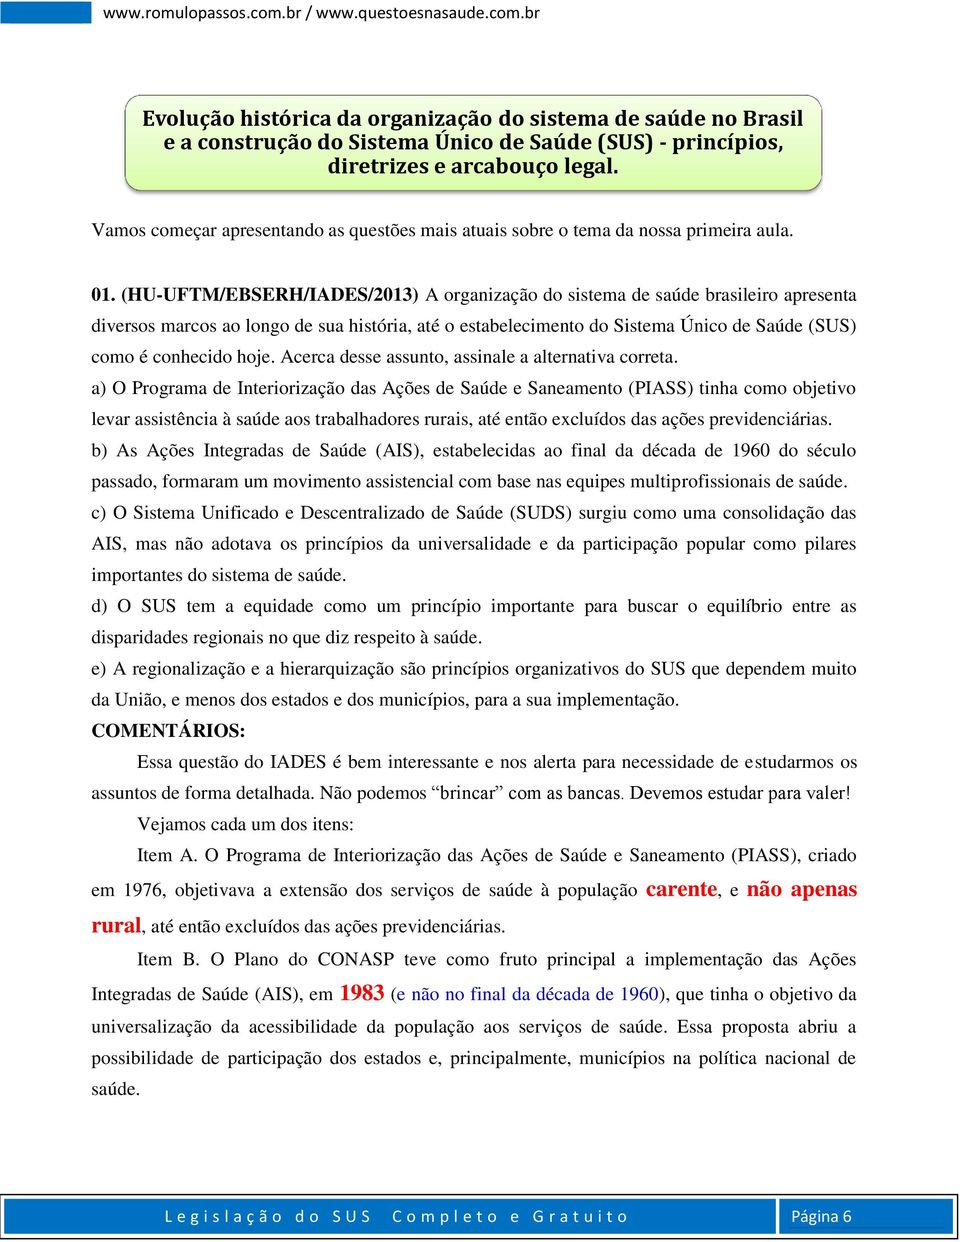 (HU-UFTM/EBSERH/IADES/2013) A organização do sistema de saúde brasileiro apresenta diversos marcos ao longo de sua história, até o estabelecimento do Sistema Único de Saúde (SUS) como é conhecido